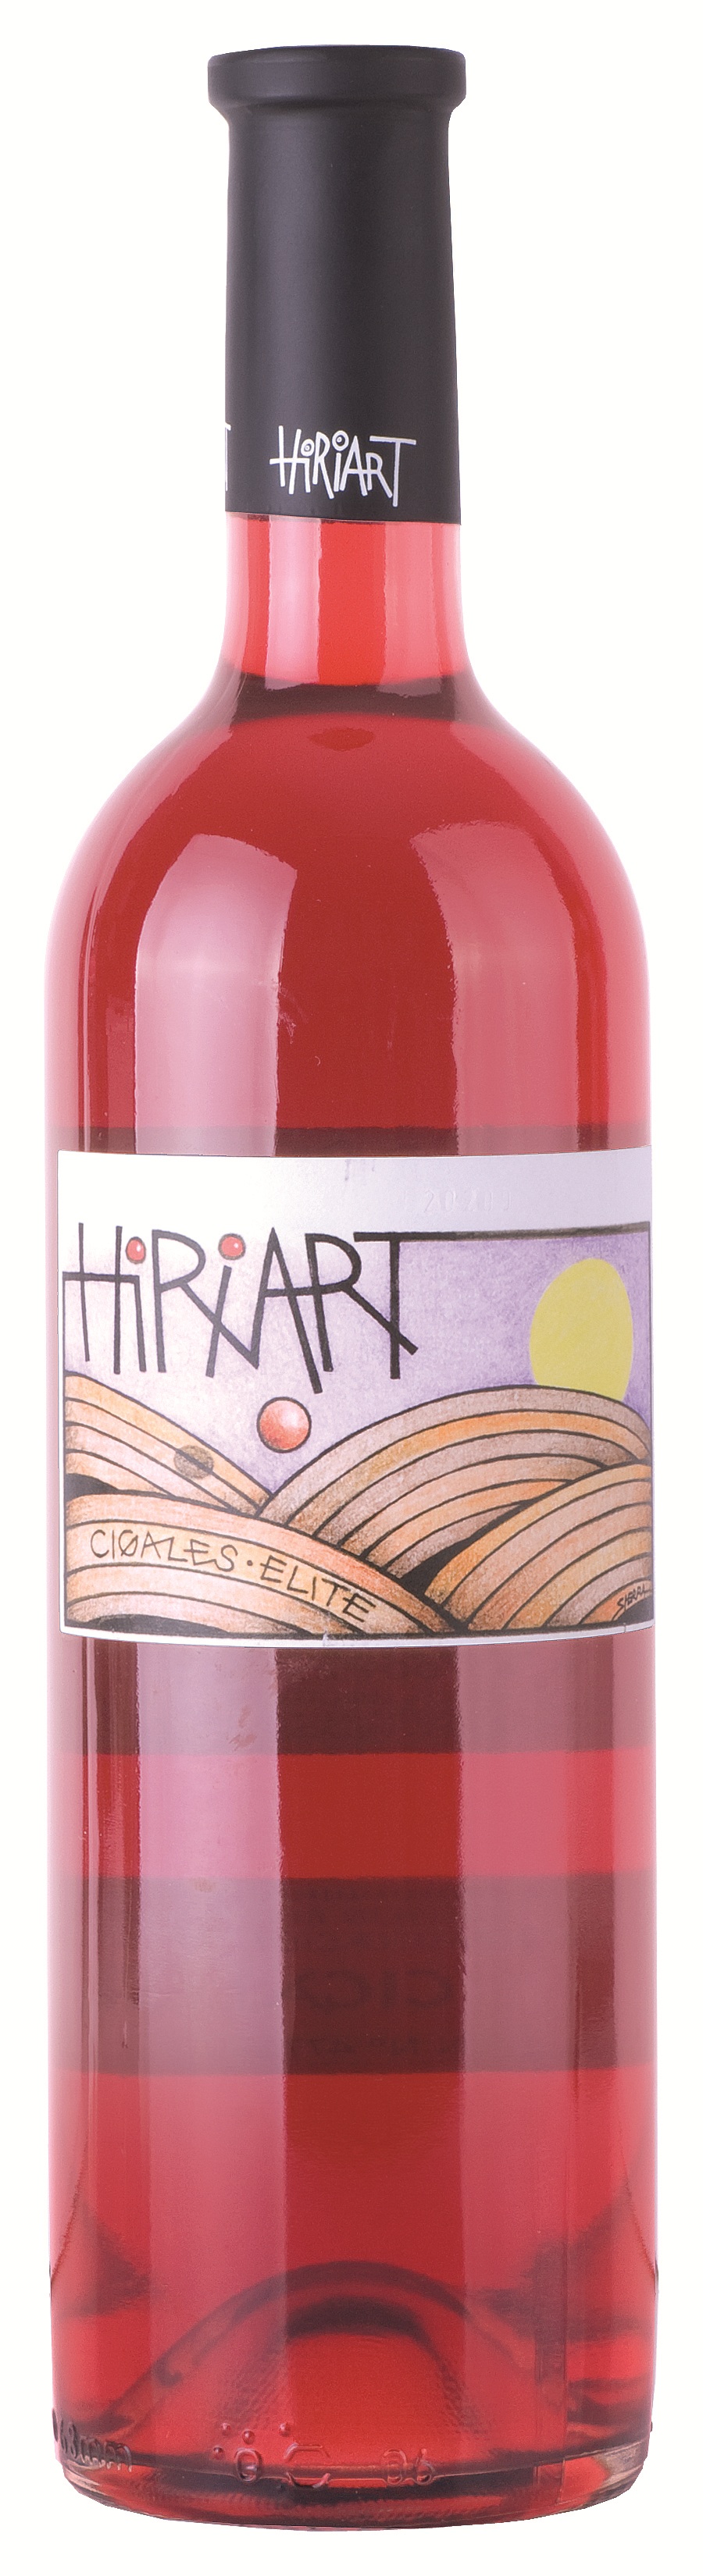 Logo del vino Hiriart Rosado Élite